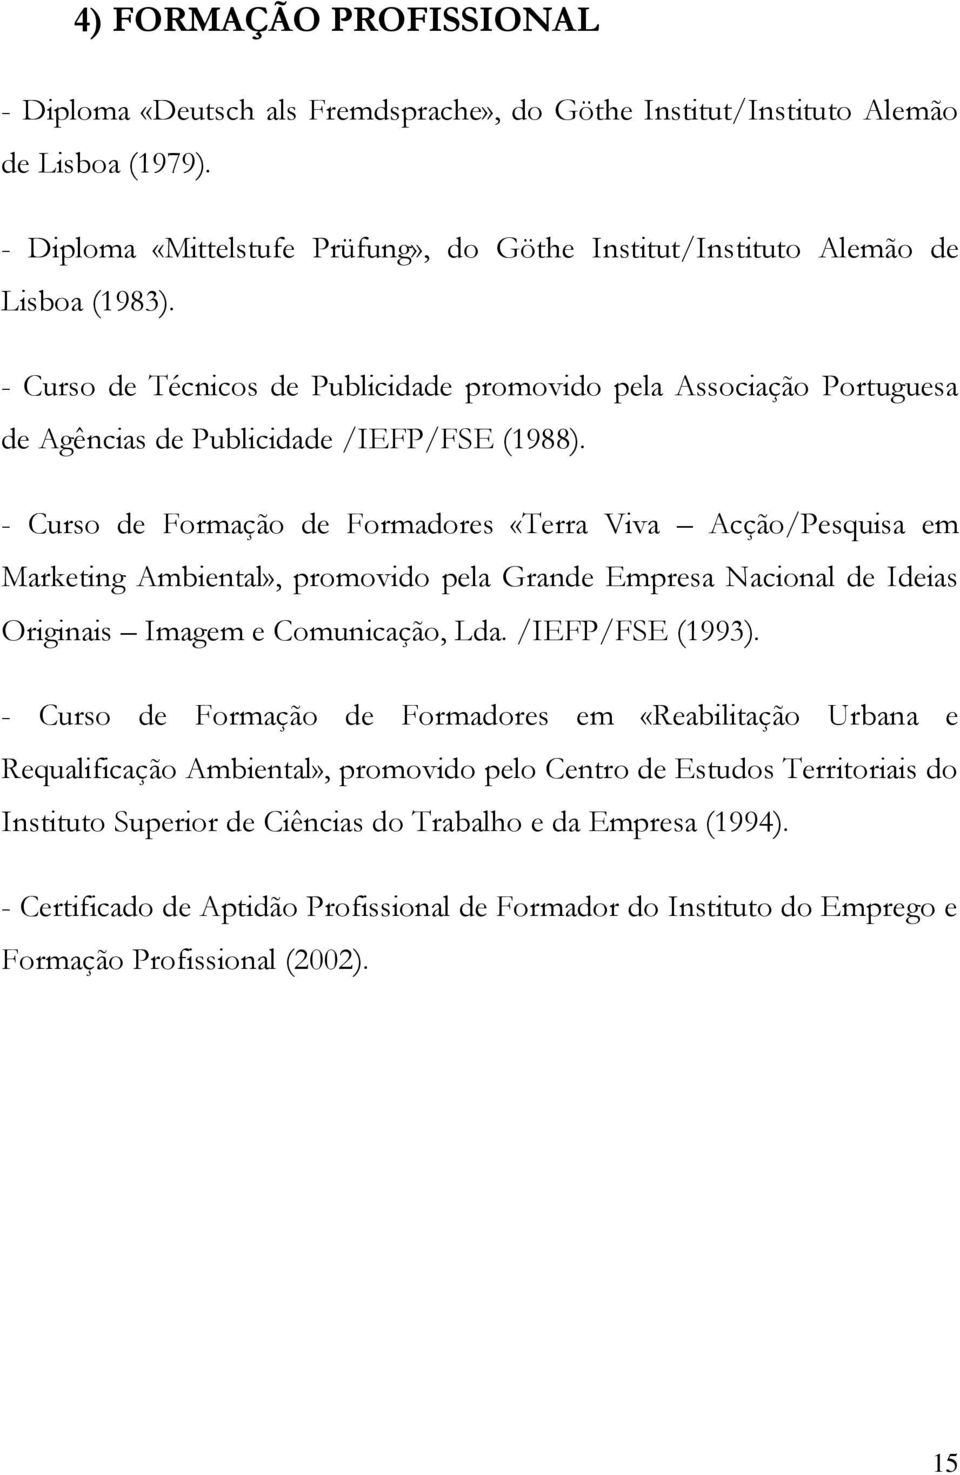 - Curso de Técnicos de Publicidade promovido pela Associação Portuguesa de Agências de Publicidade /IEFP/FSE (1988).